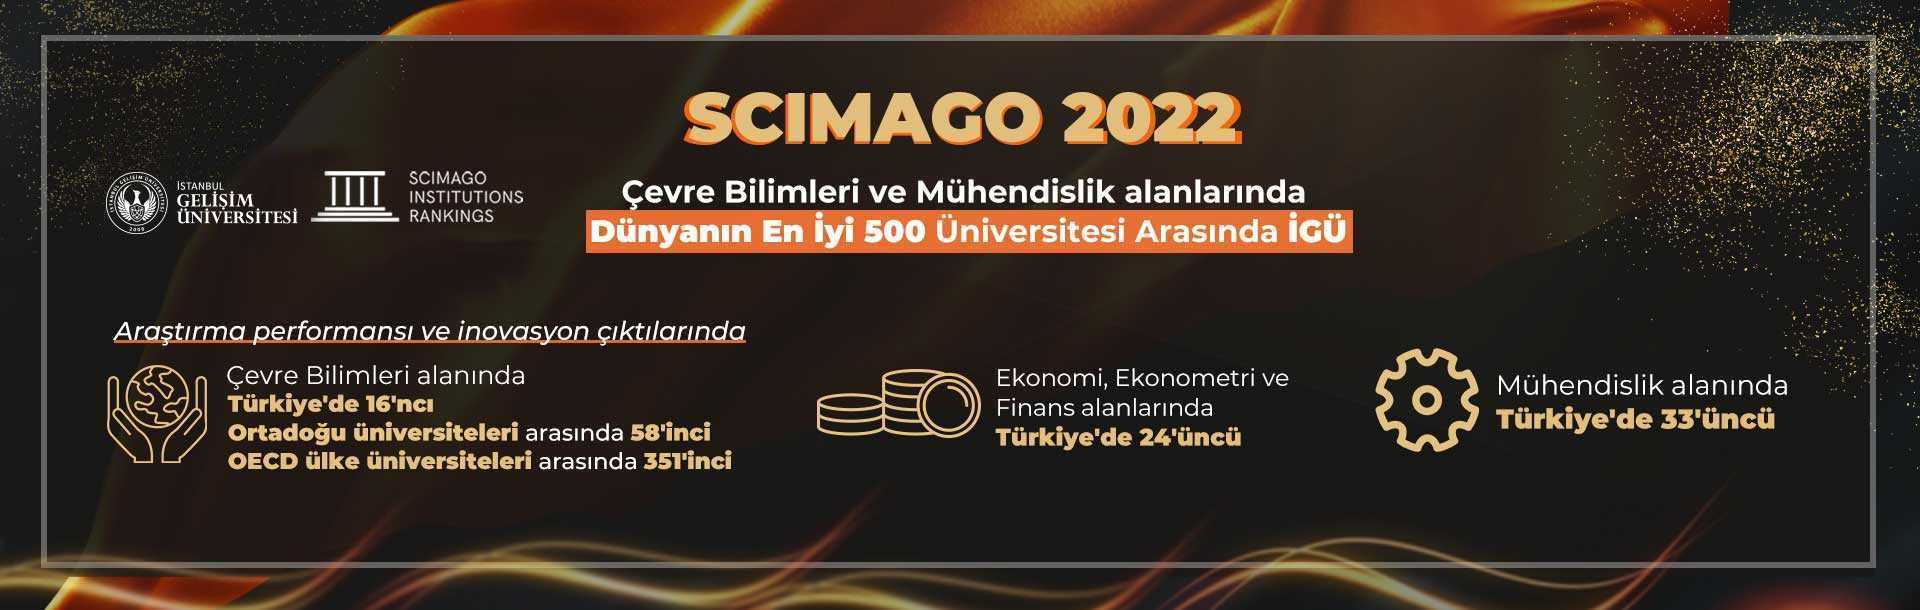 Scimago Ödülü